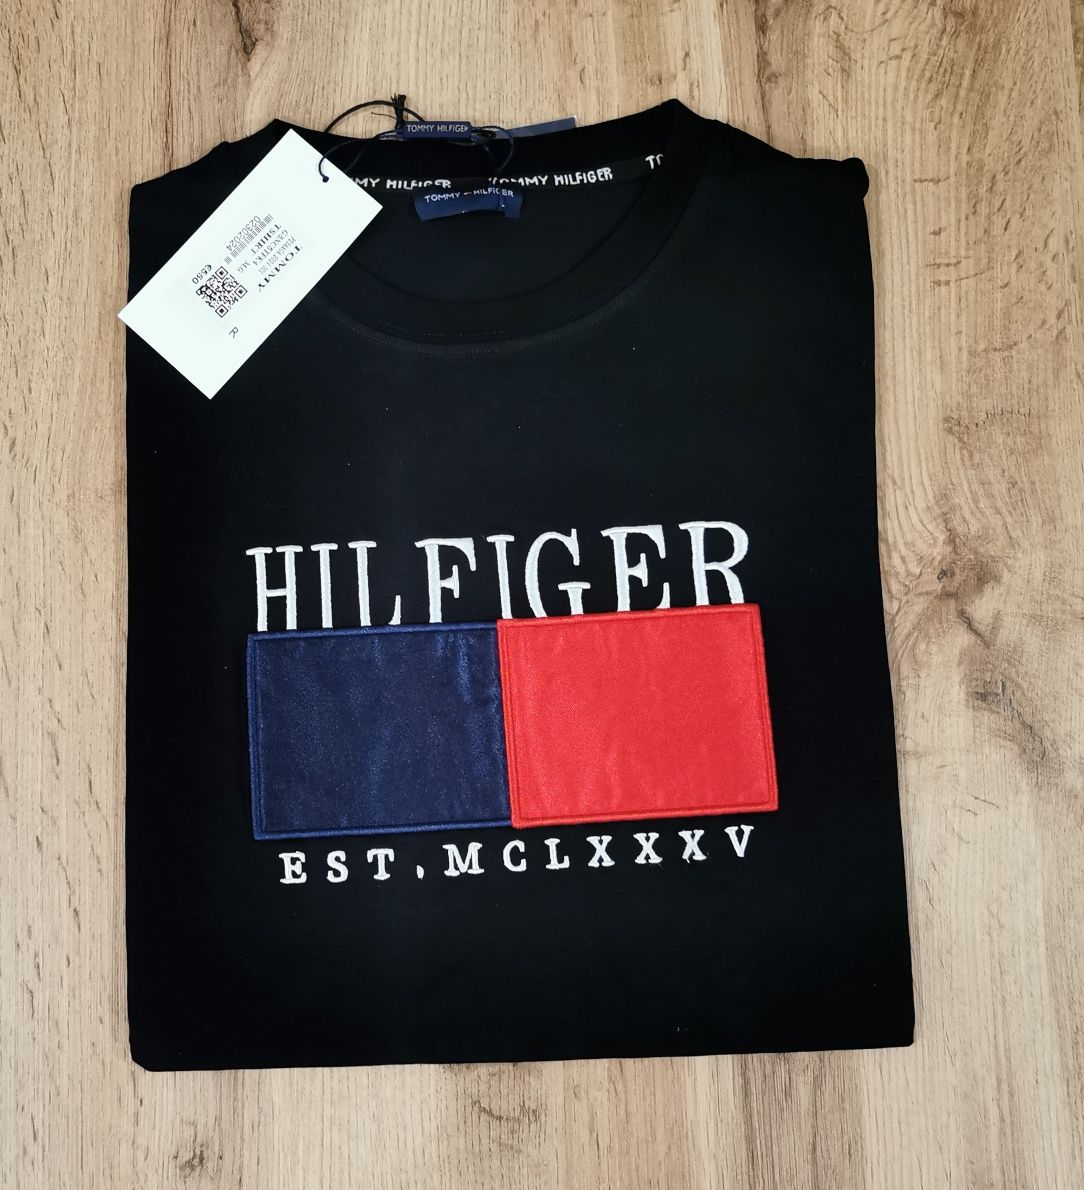 Koszulka bluzka t-shirt męska Tommy Hilfiger r. L